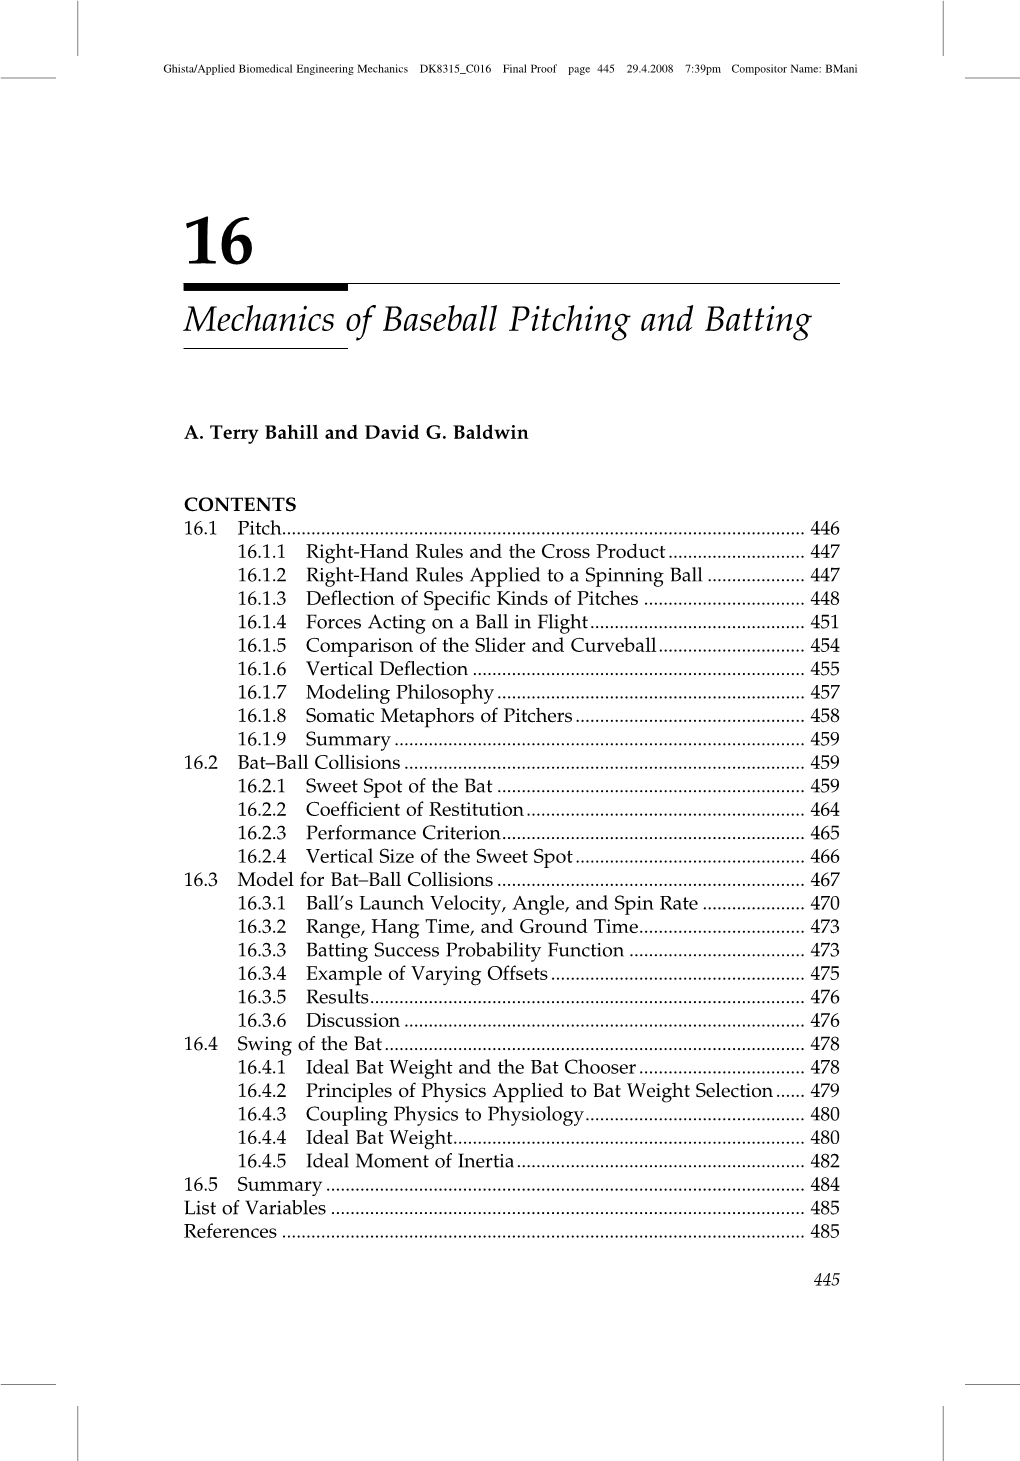 Mechanics of Baseball Pitching and Batting